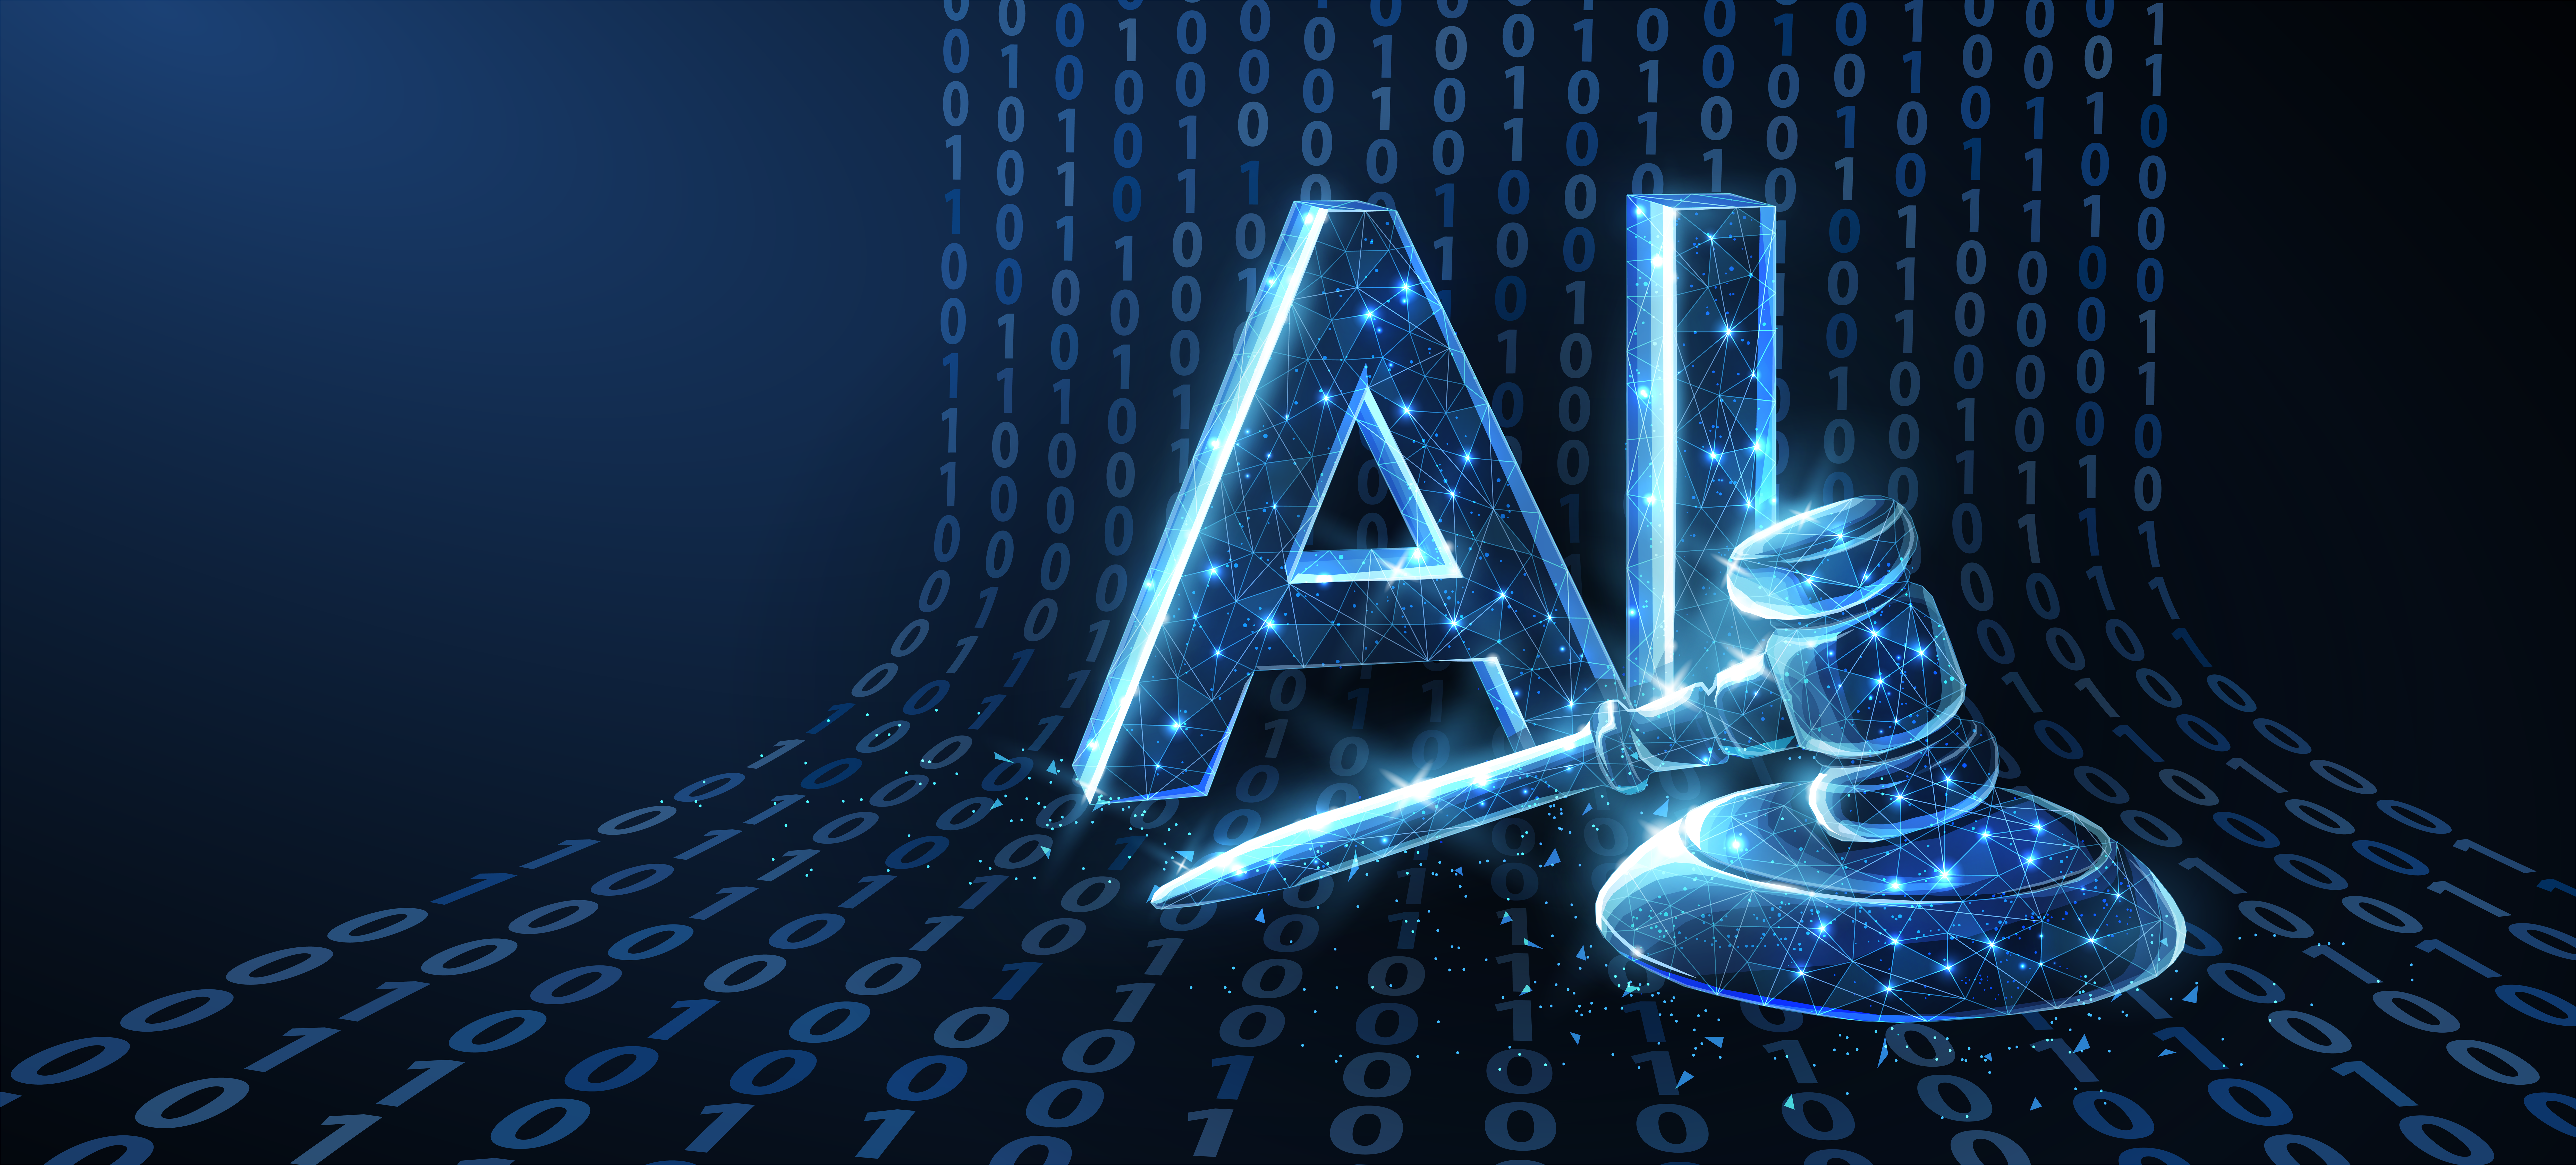 Intelligenza artificiale e quadro giuridico europeo